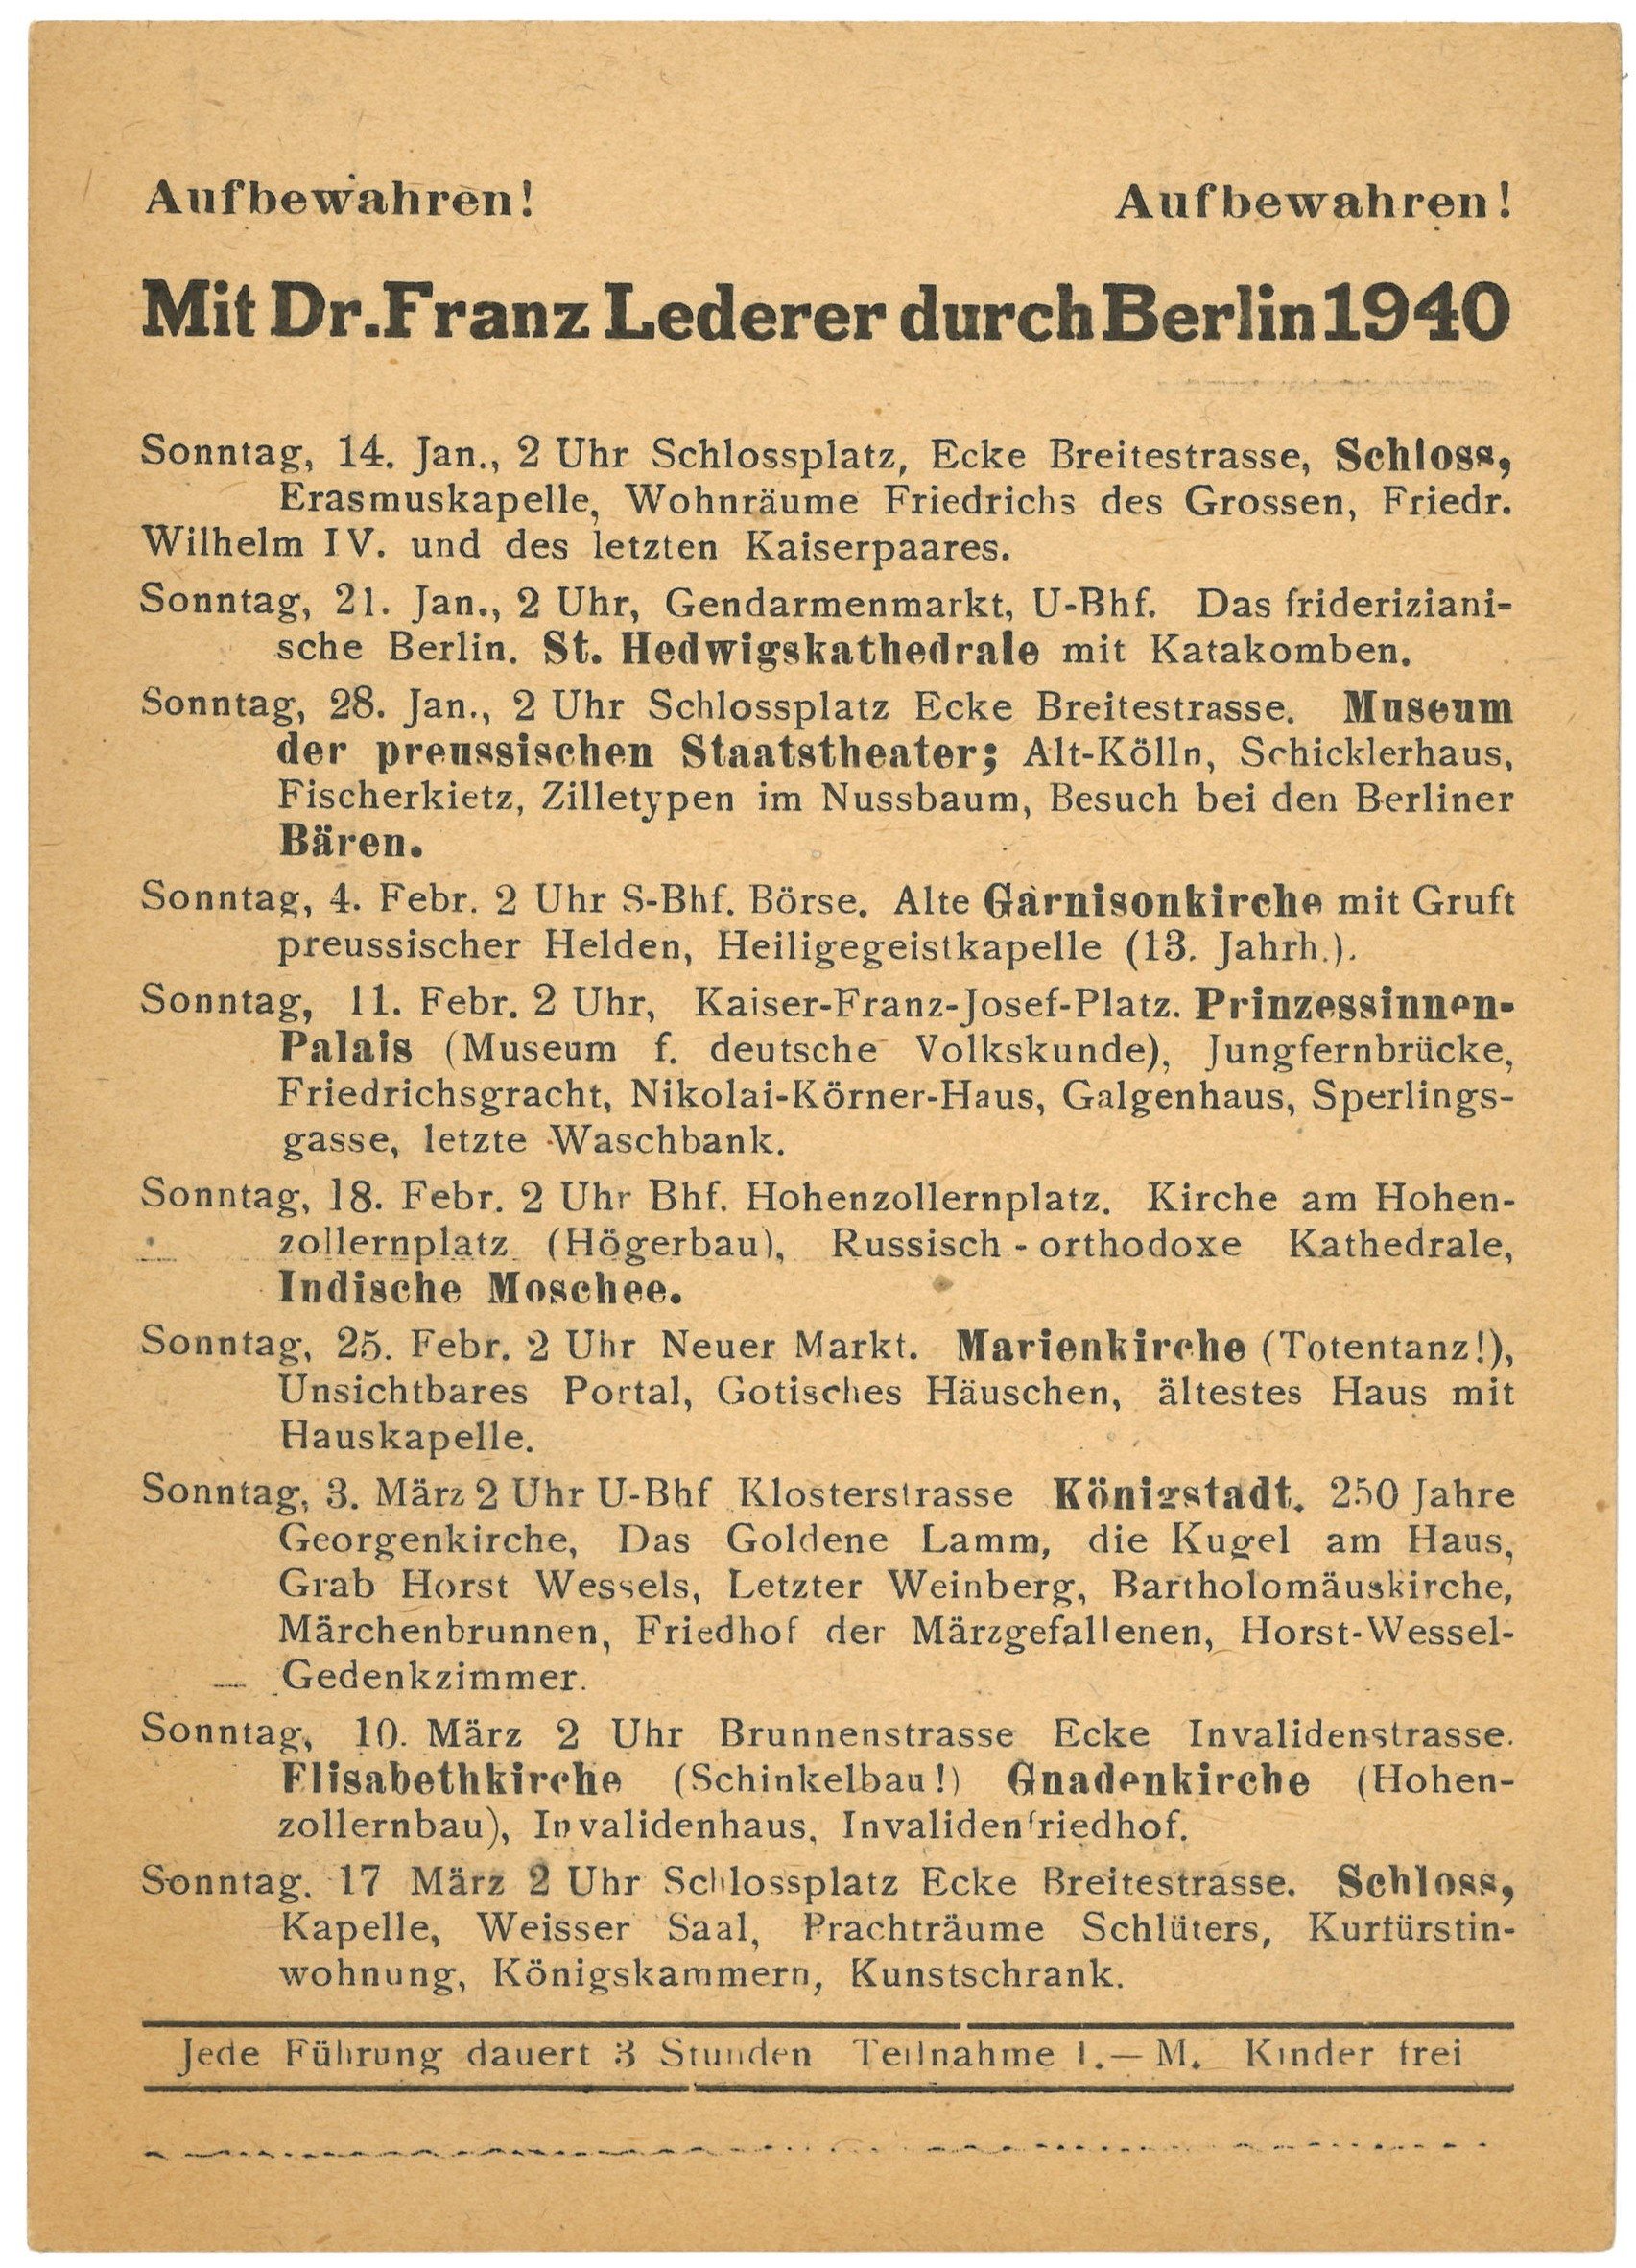 Programm der Berlin-Führungen von Dr. Franz Lederer für Januar bis März 1940 (Landesgeschichtliche Vereinigung für die Mark Brandenburg e.V., Archiv CC BY)